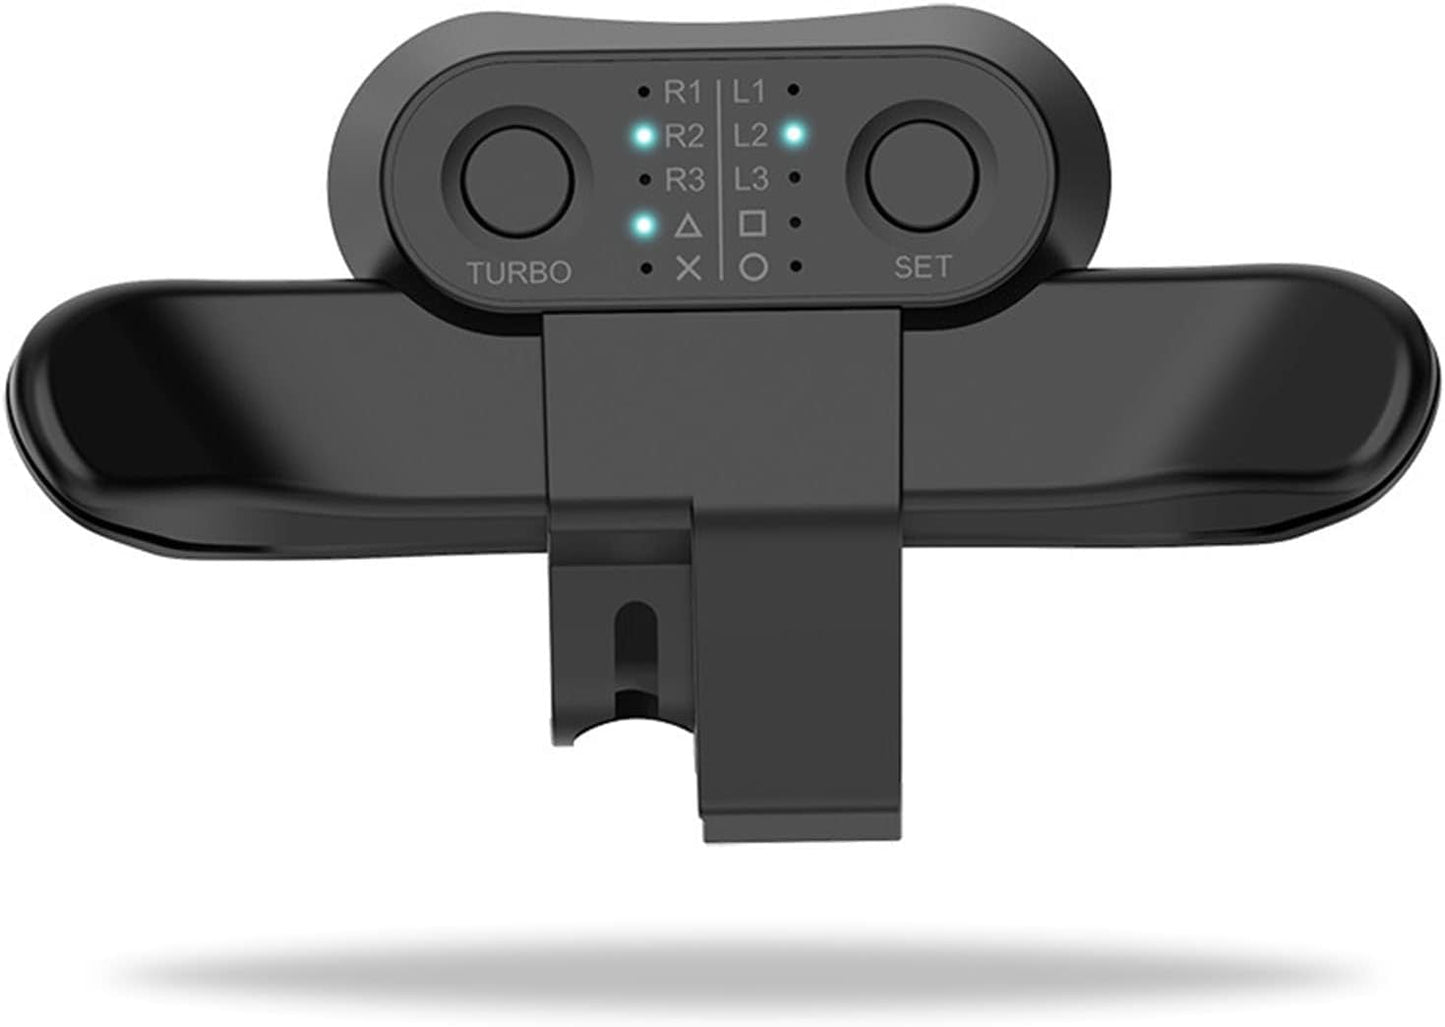 【2023年度新作】PS4 コントローラー用 背面パドル ブラック PS4 背面ボタンアタッチメント 簡単設定 リコイル制御 連射 ターボ付き 機能ボタンマッピング付き